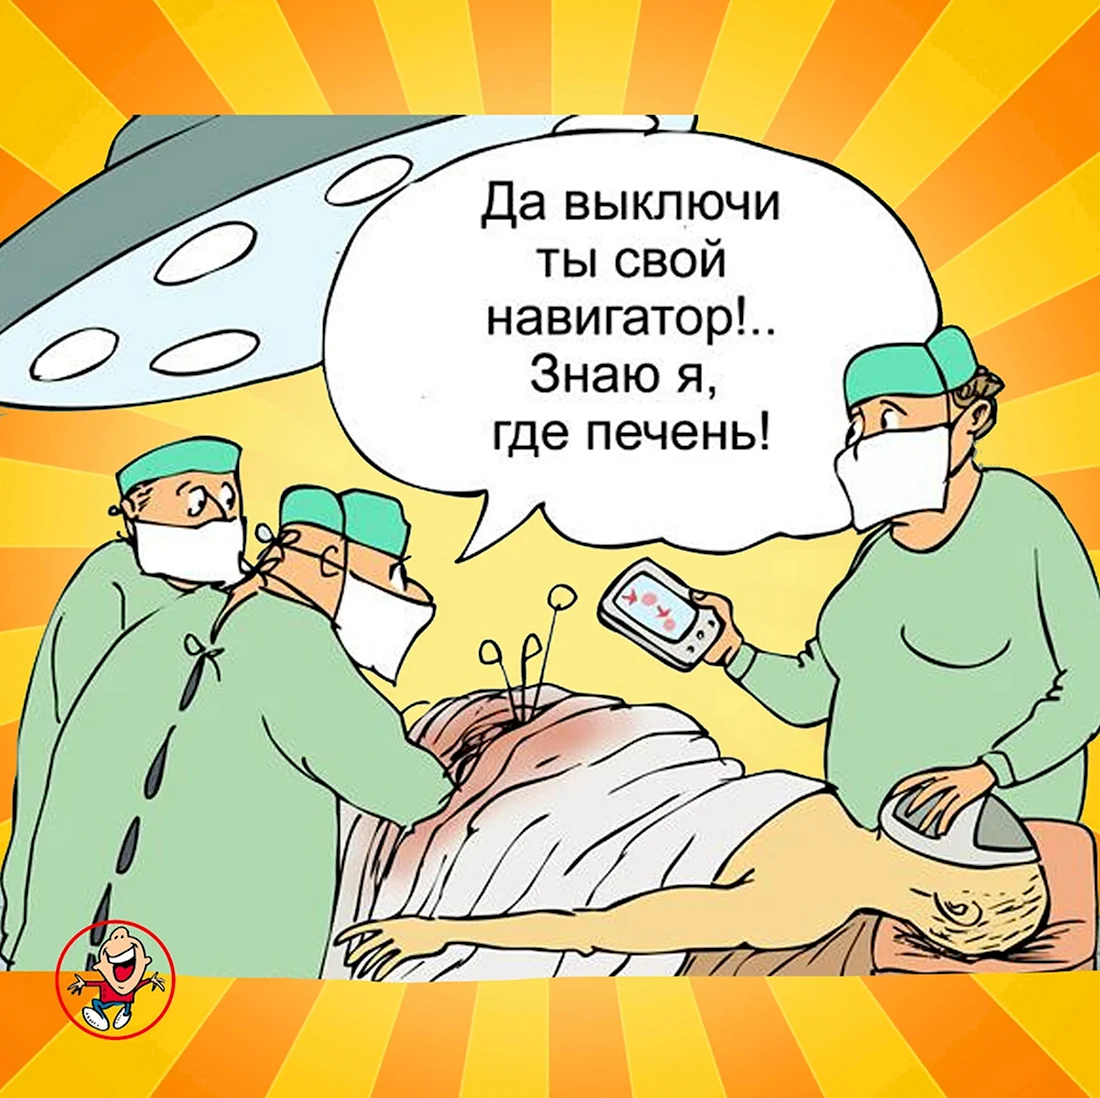 Анекдоты про хирургов. Анекдот в картинке